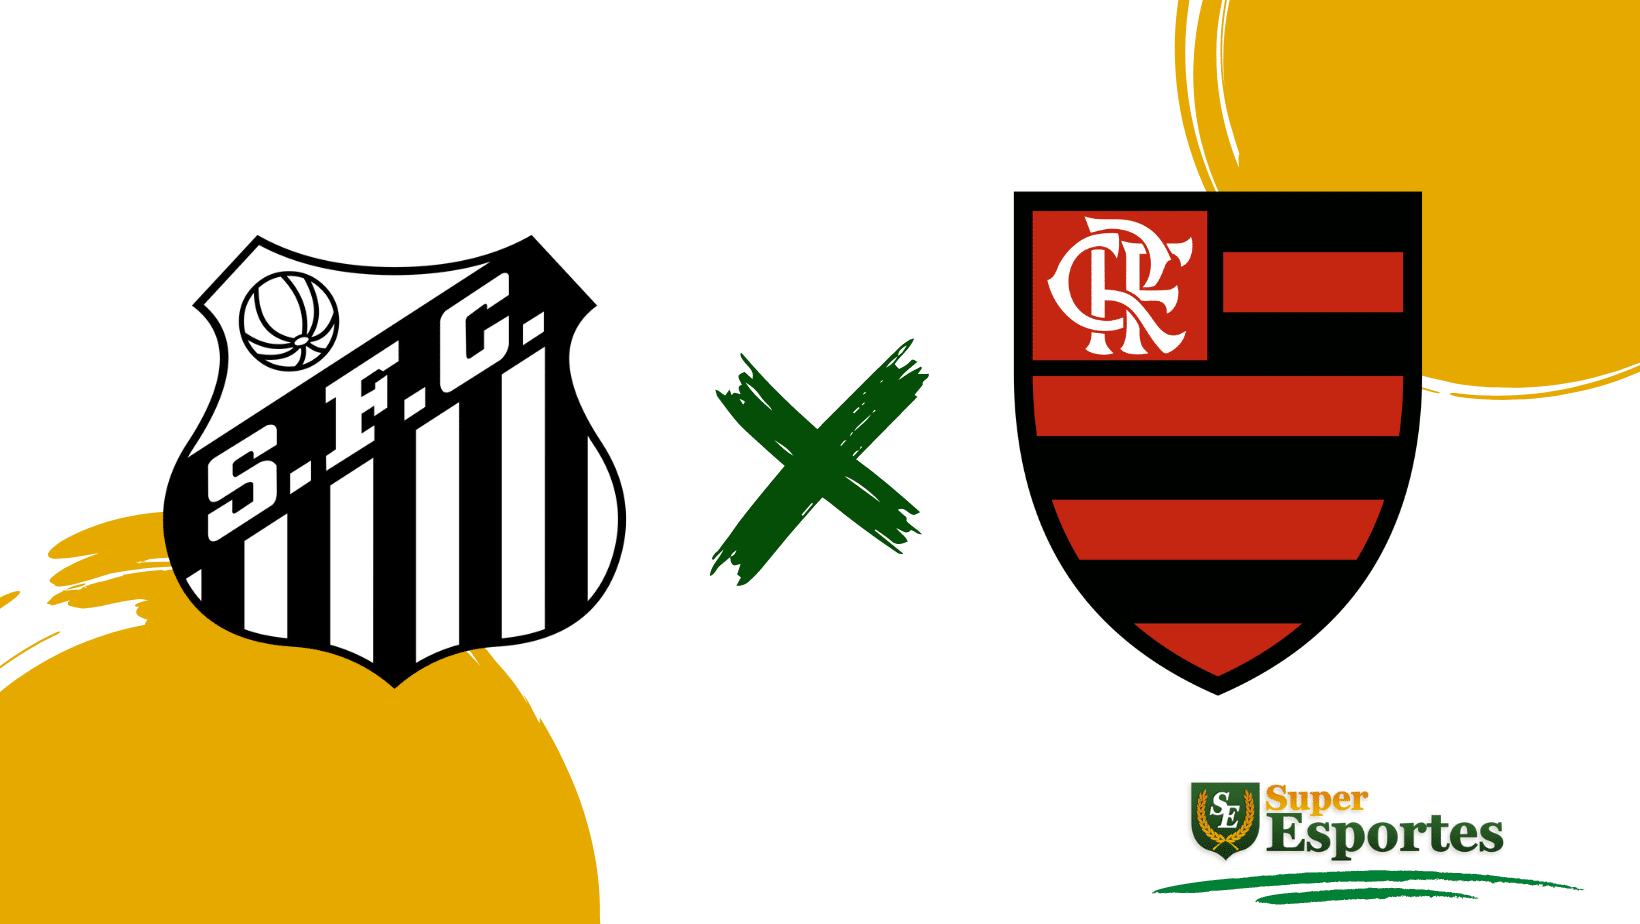 Onde assistir ao vivo o jogo do Flamengo hoje, terça-feira, 25